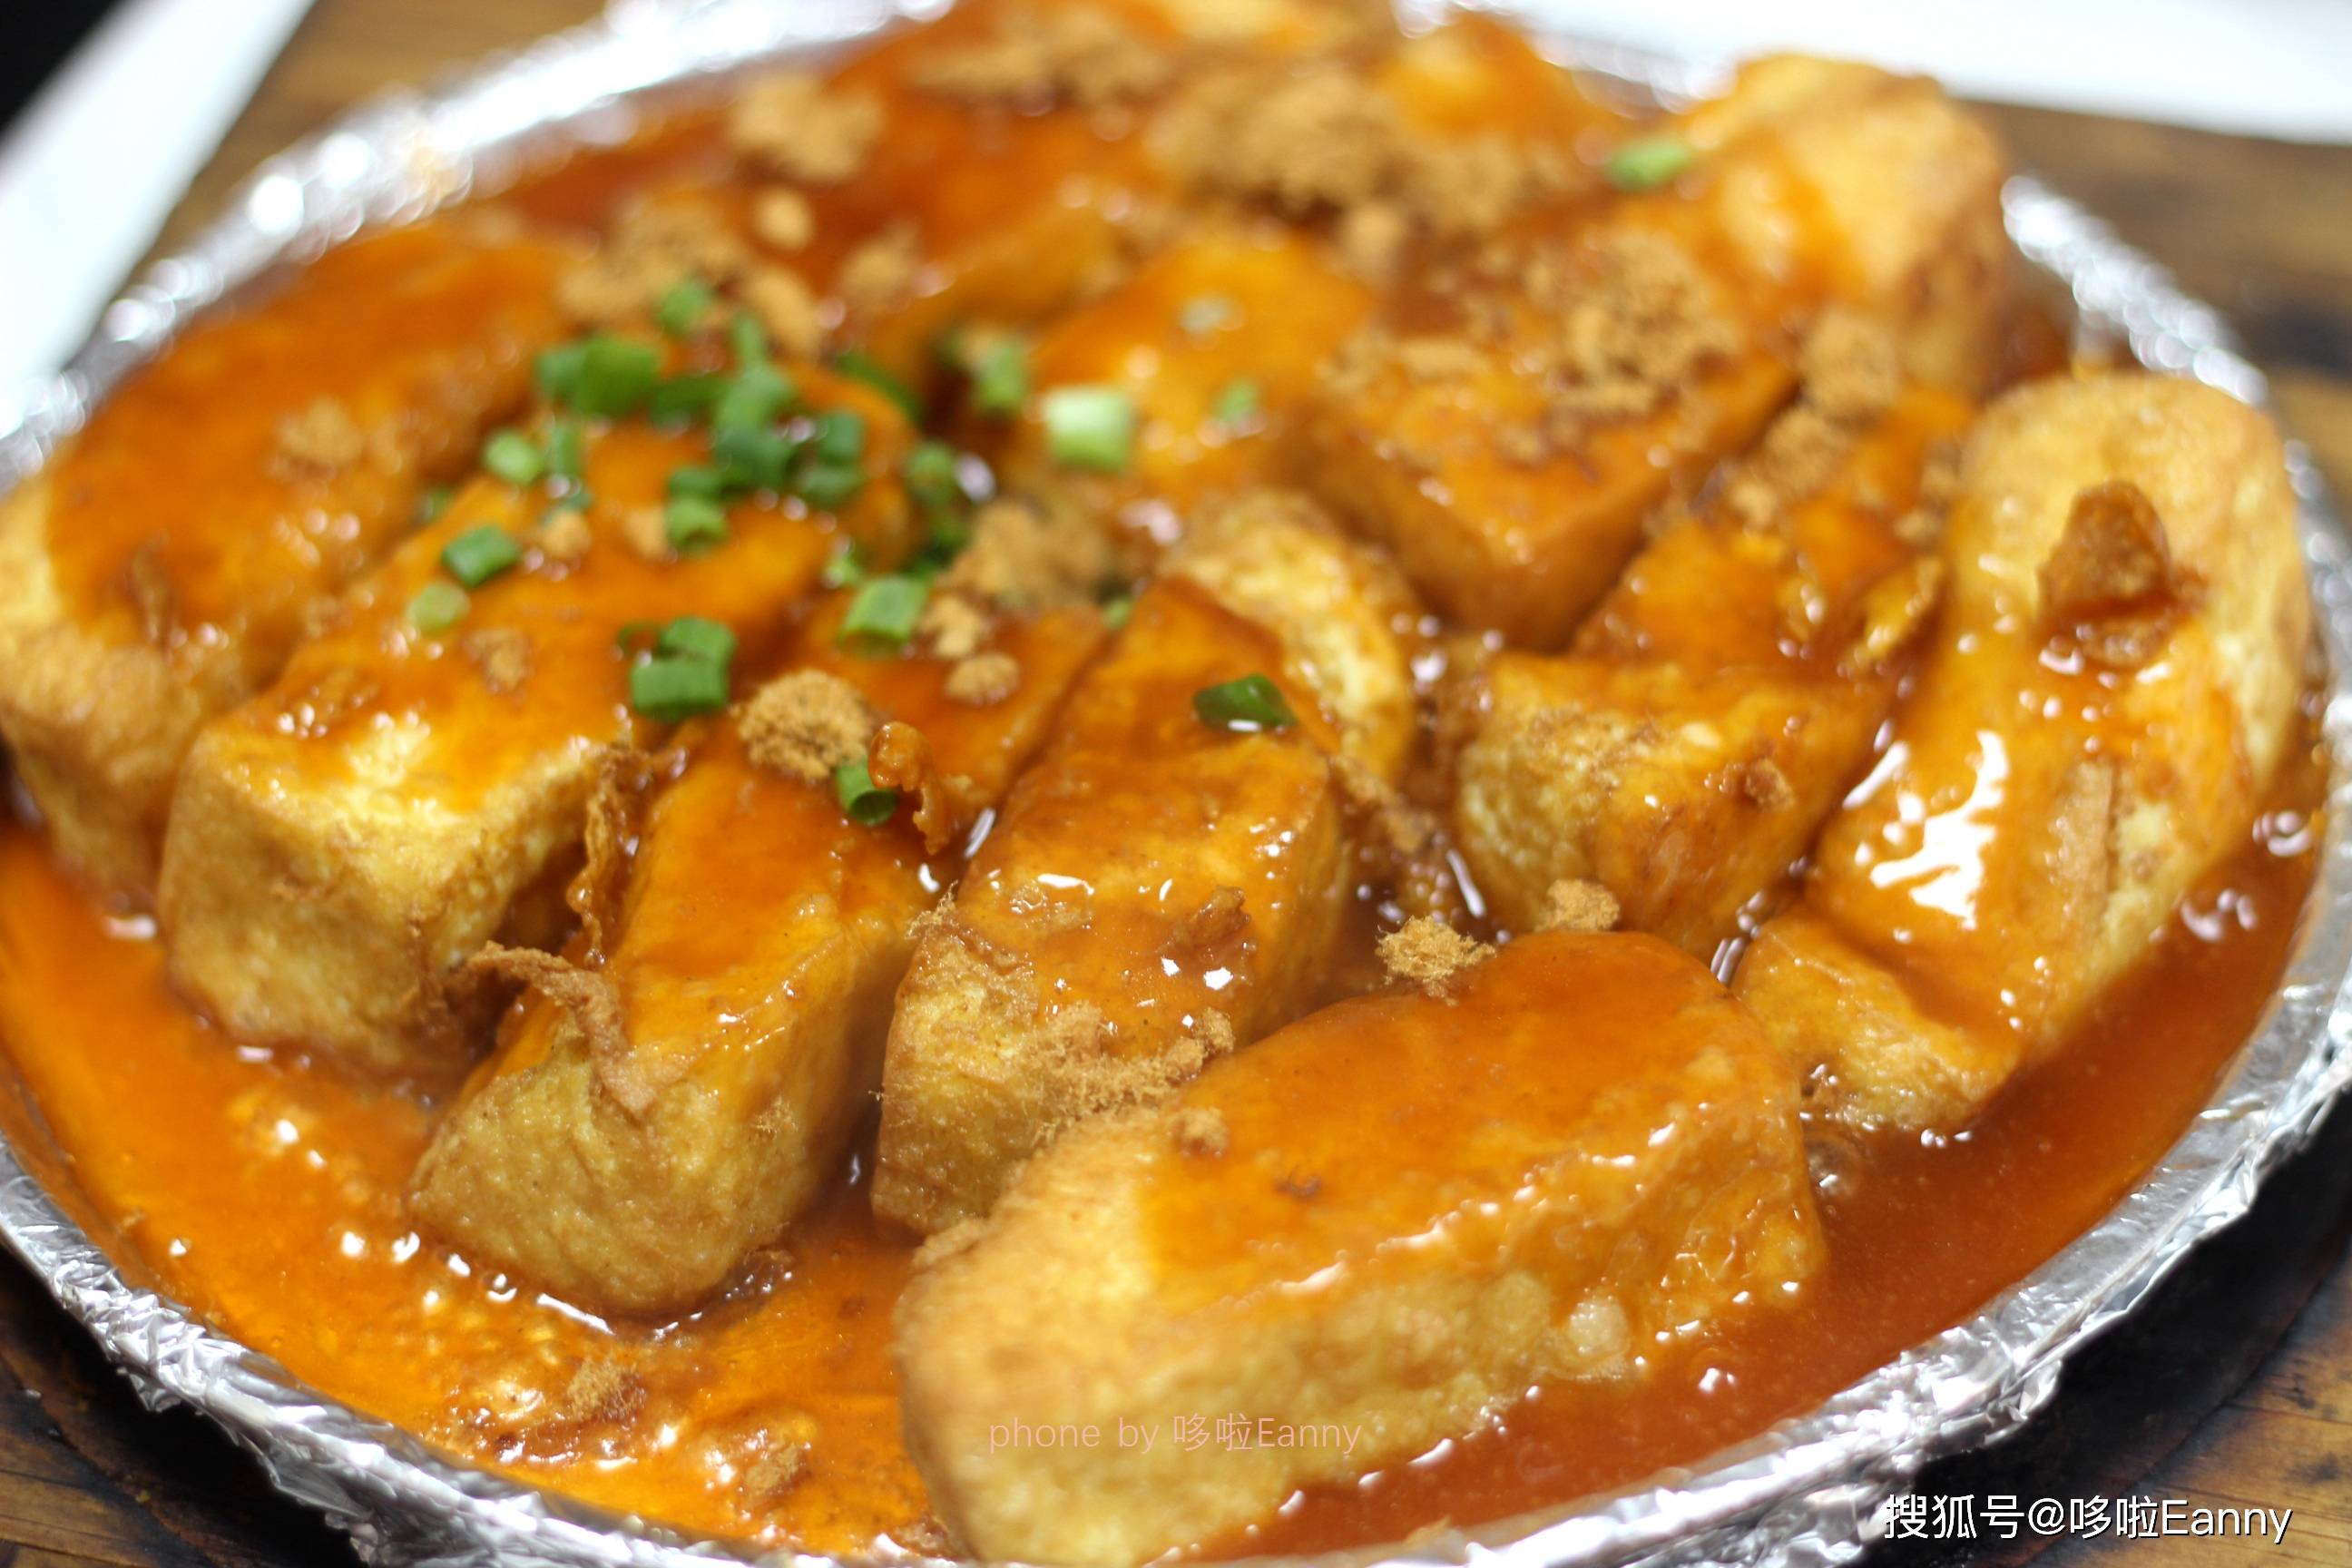 【鲍汁豆腐】 放在铁板上的炸日本豆腐,外酥里嫩,还有撒了肉松,咬一口